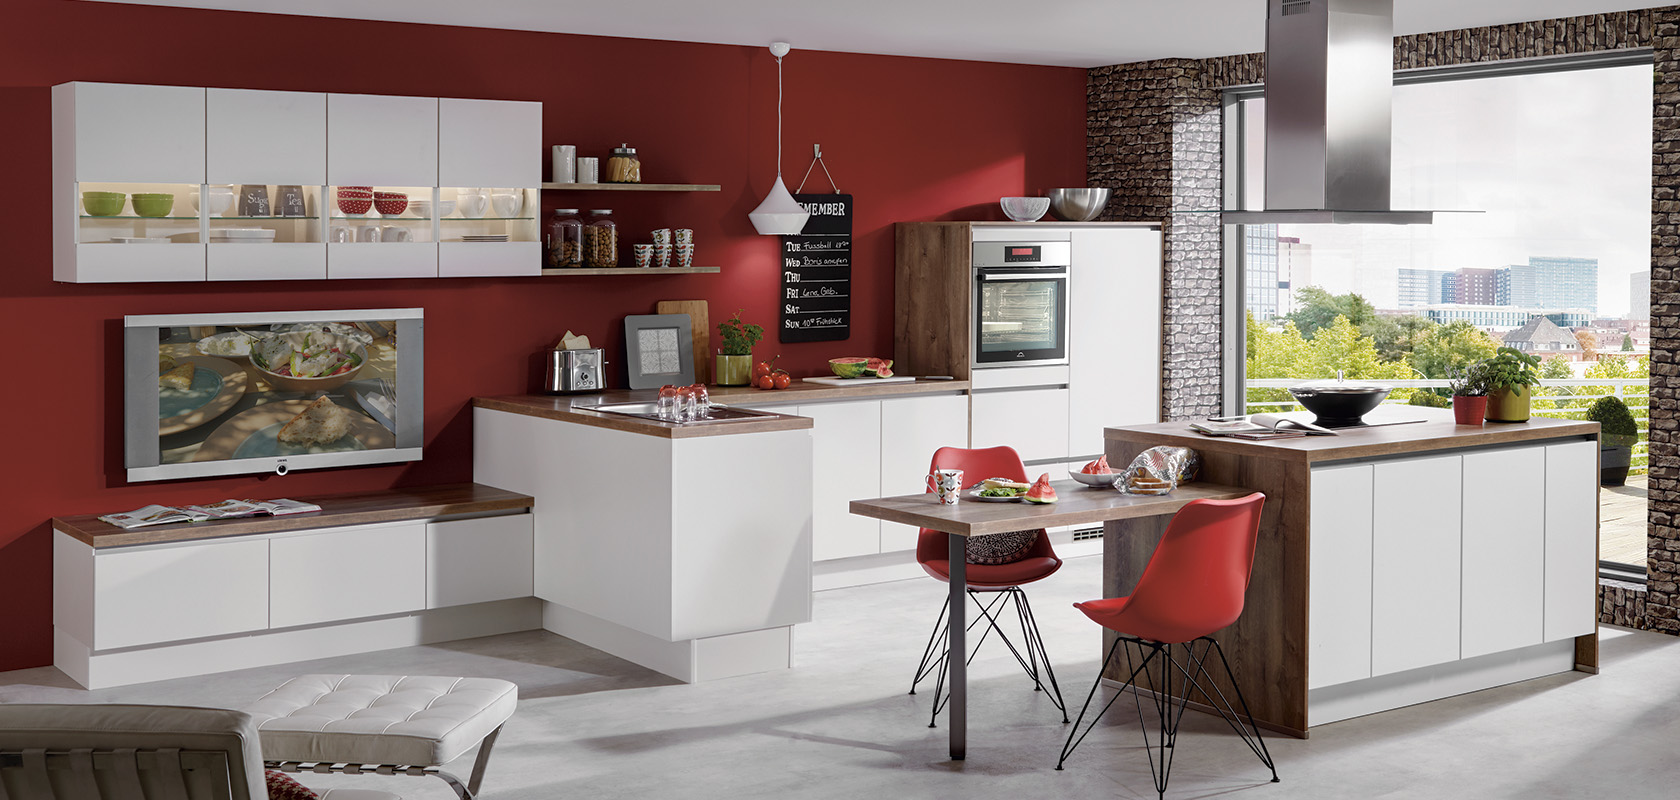 Interior de cocina moderna con gabinetes modulares blancos, paredes de acento rojas, detalles de ladrillo, electrodomésticos elegantes y un acogedor comedor con una vista pintoresca desde la ventana.